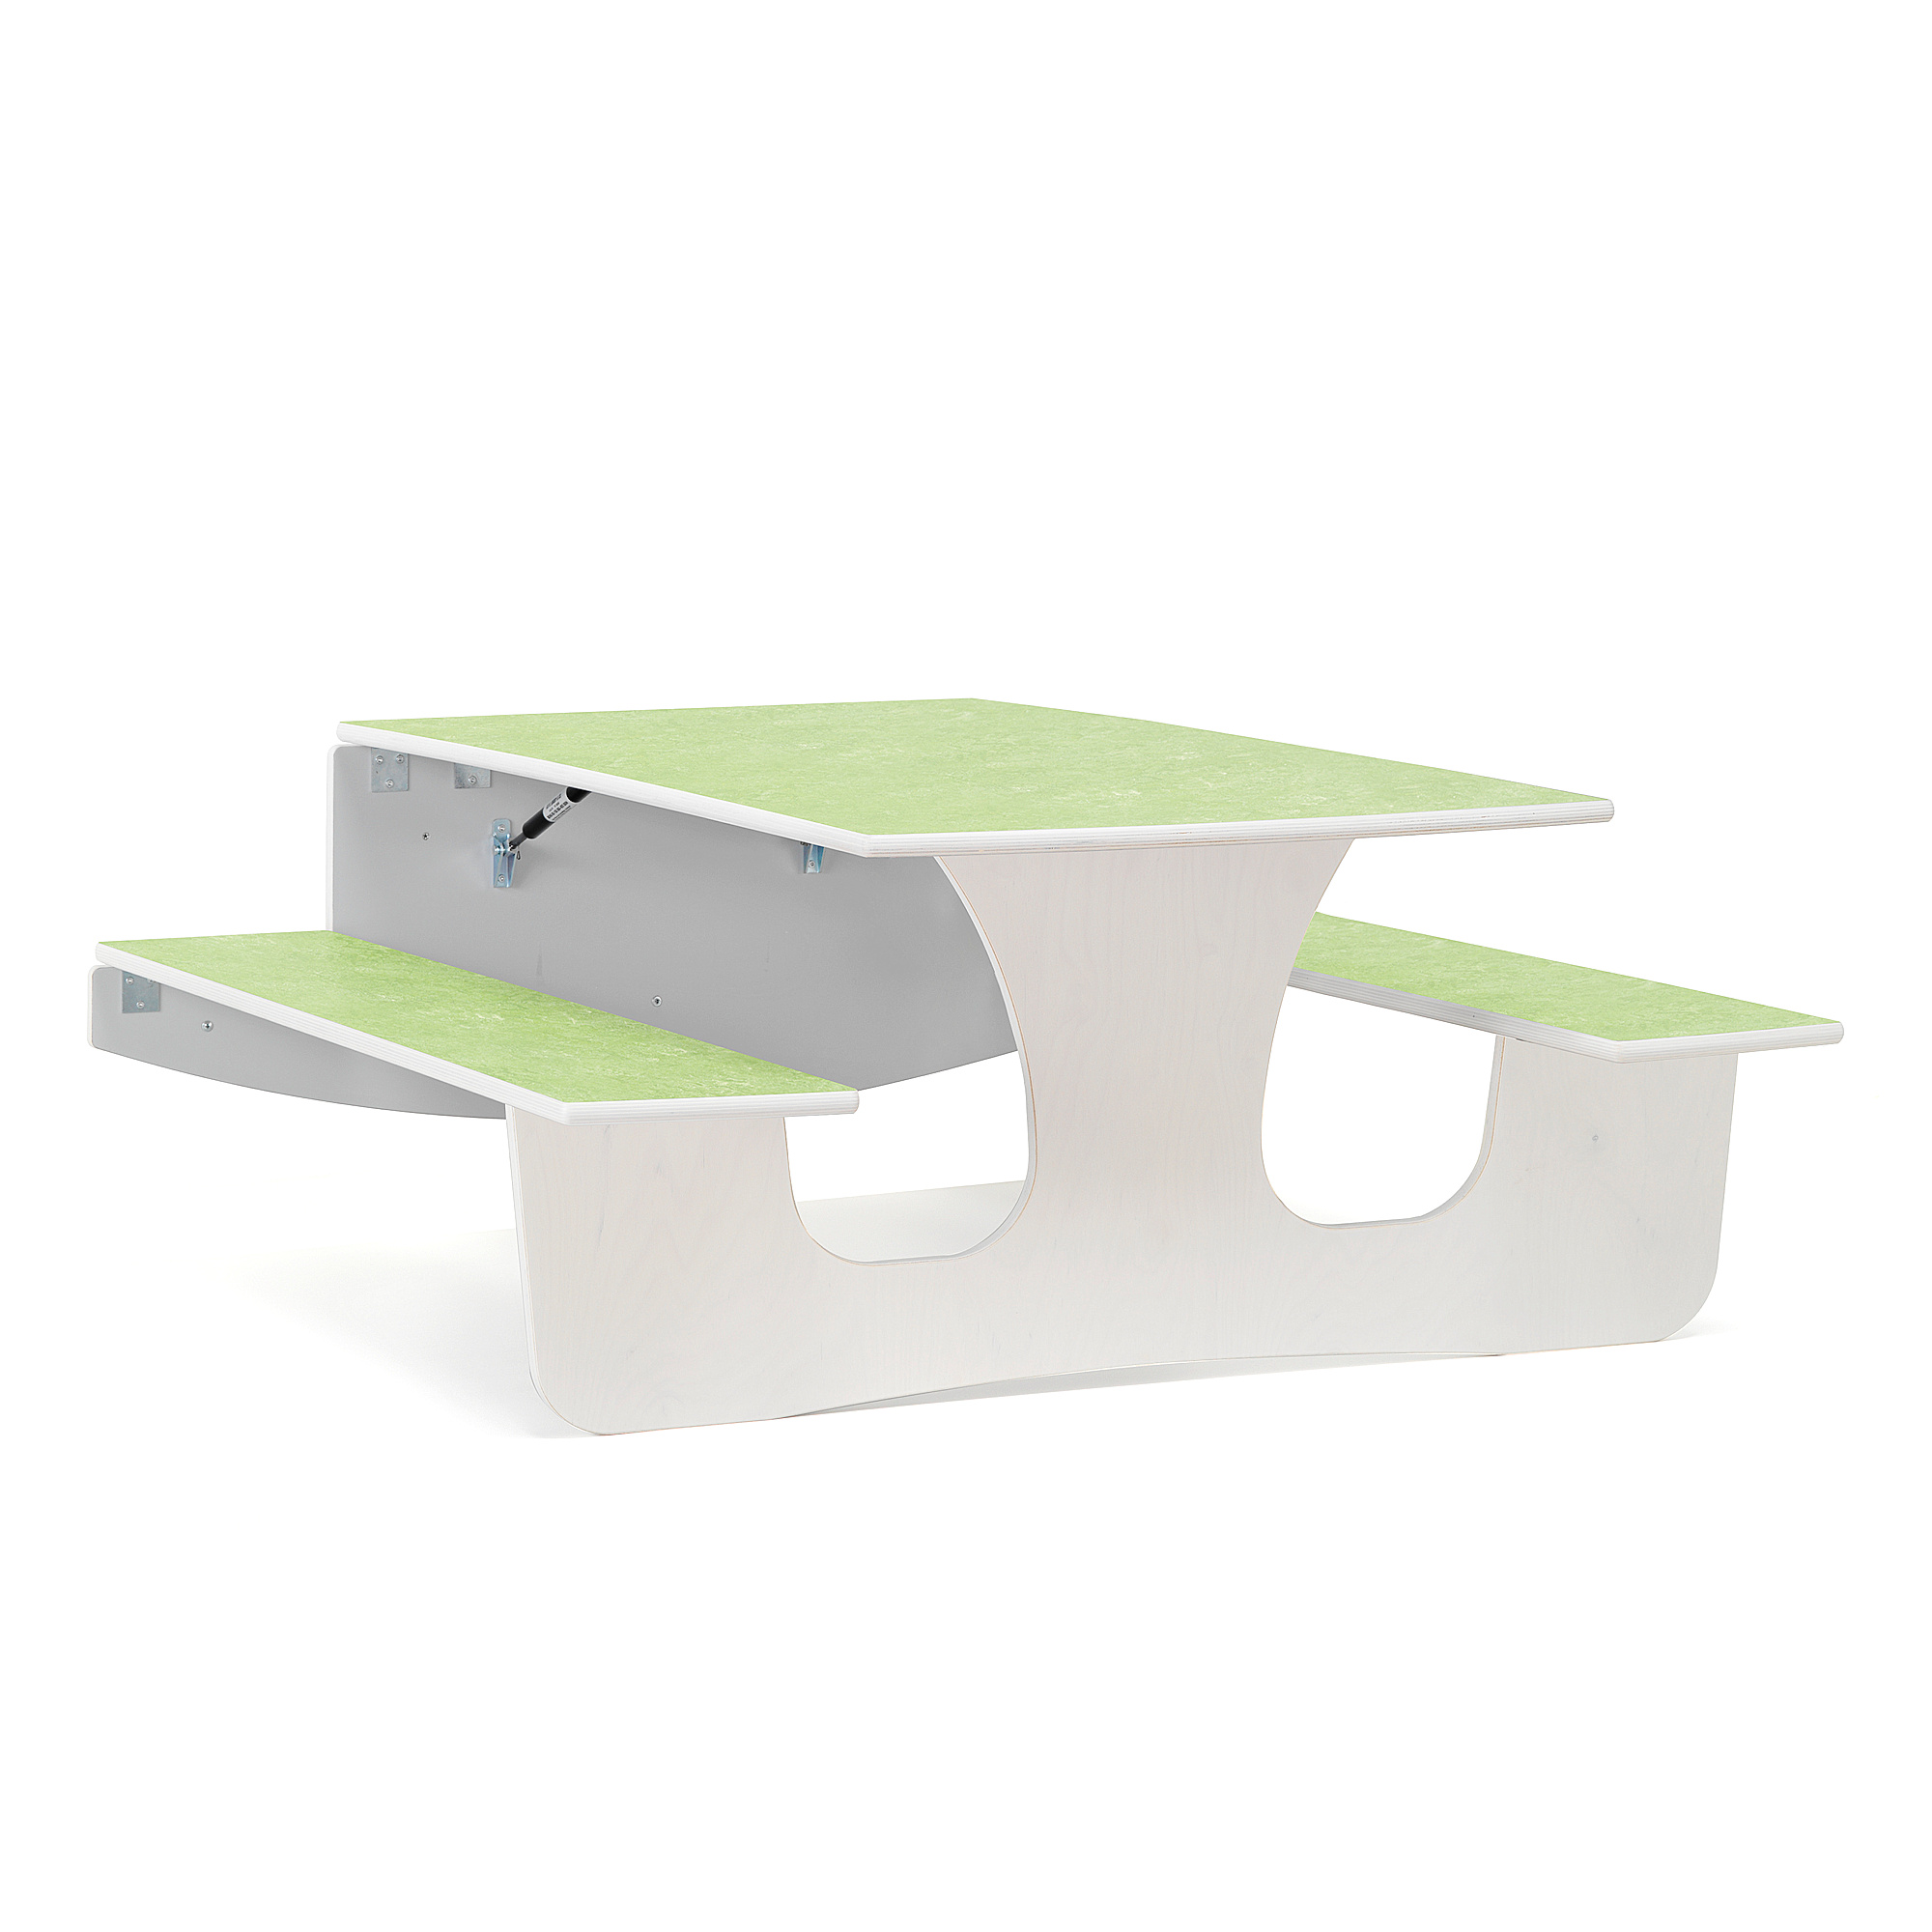 Nástěnný stůl LUCAS, 1200x1200x570 mm, bílá, zelená